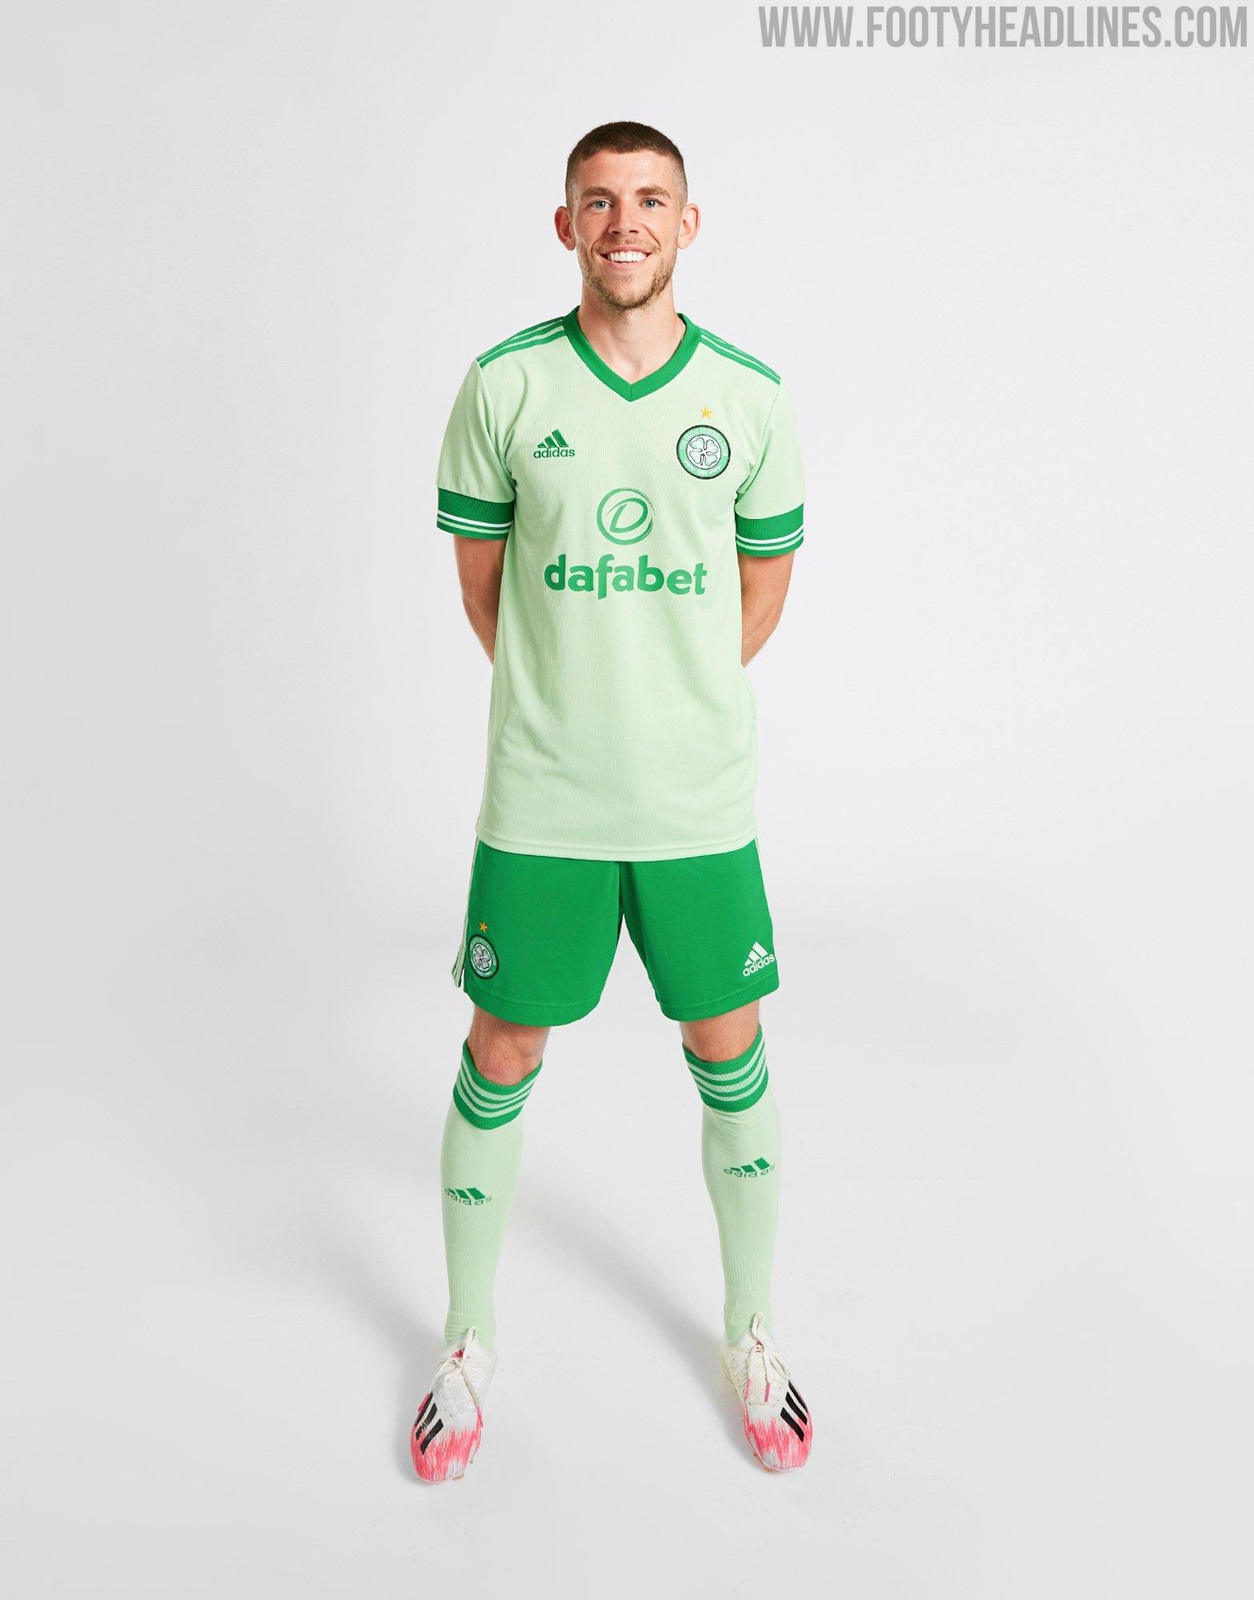 Celtic FC 2020/21 adidas Third Kit - FOOTBALL FASHION